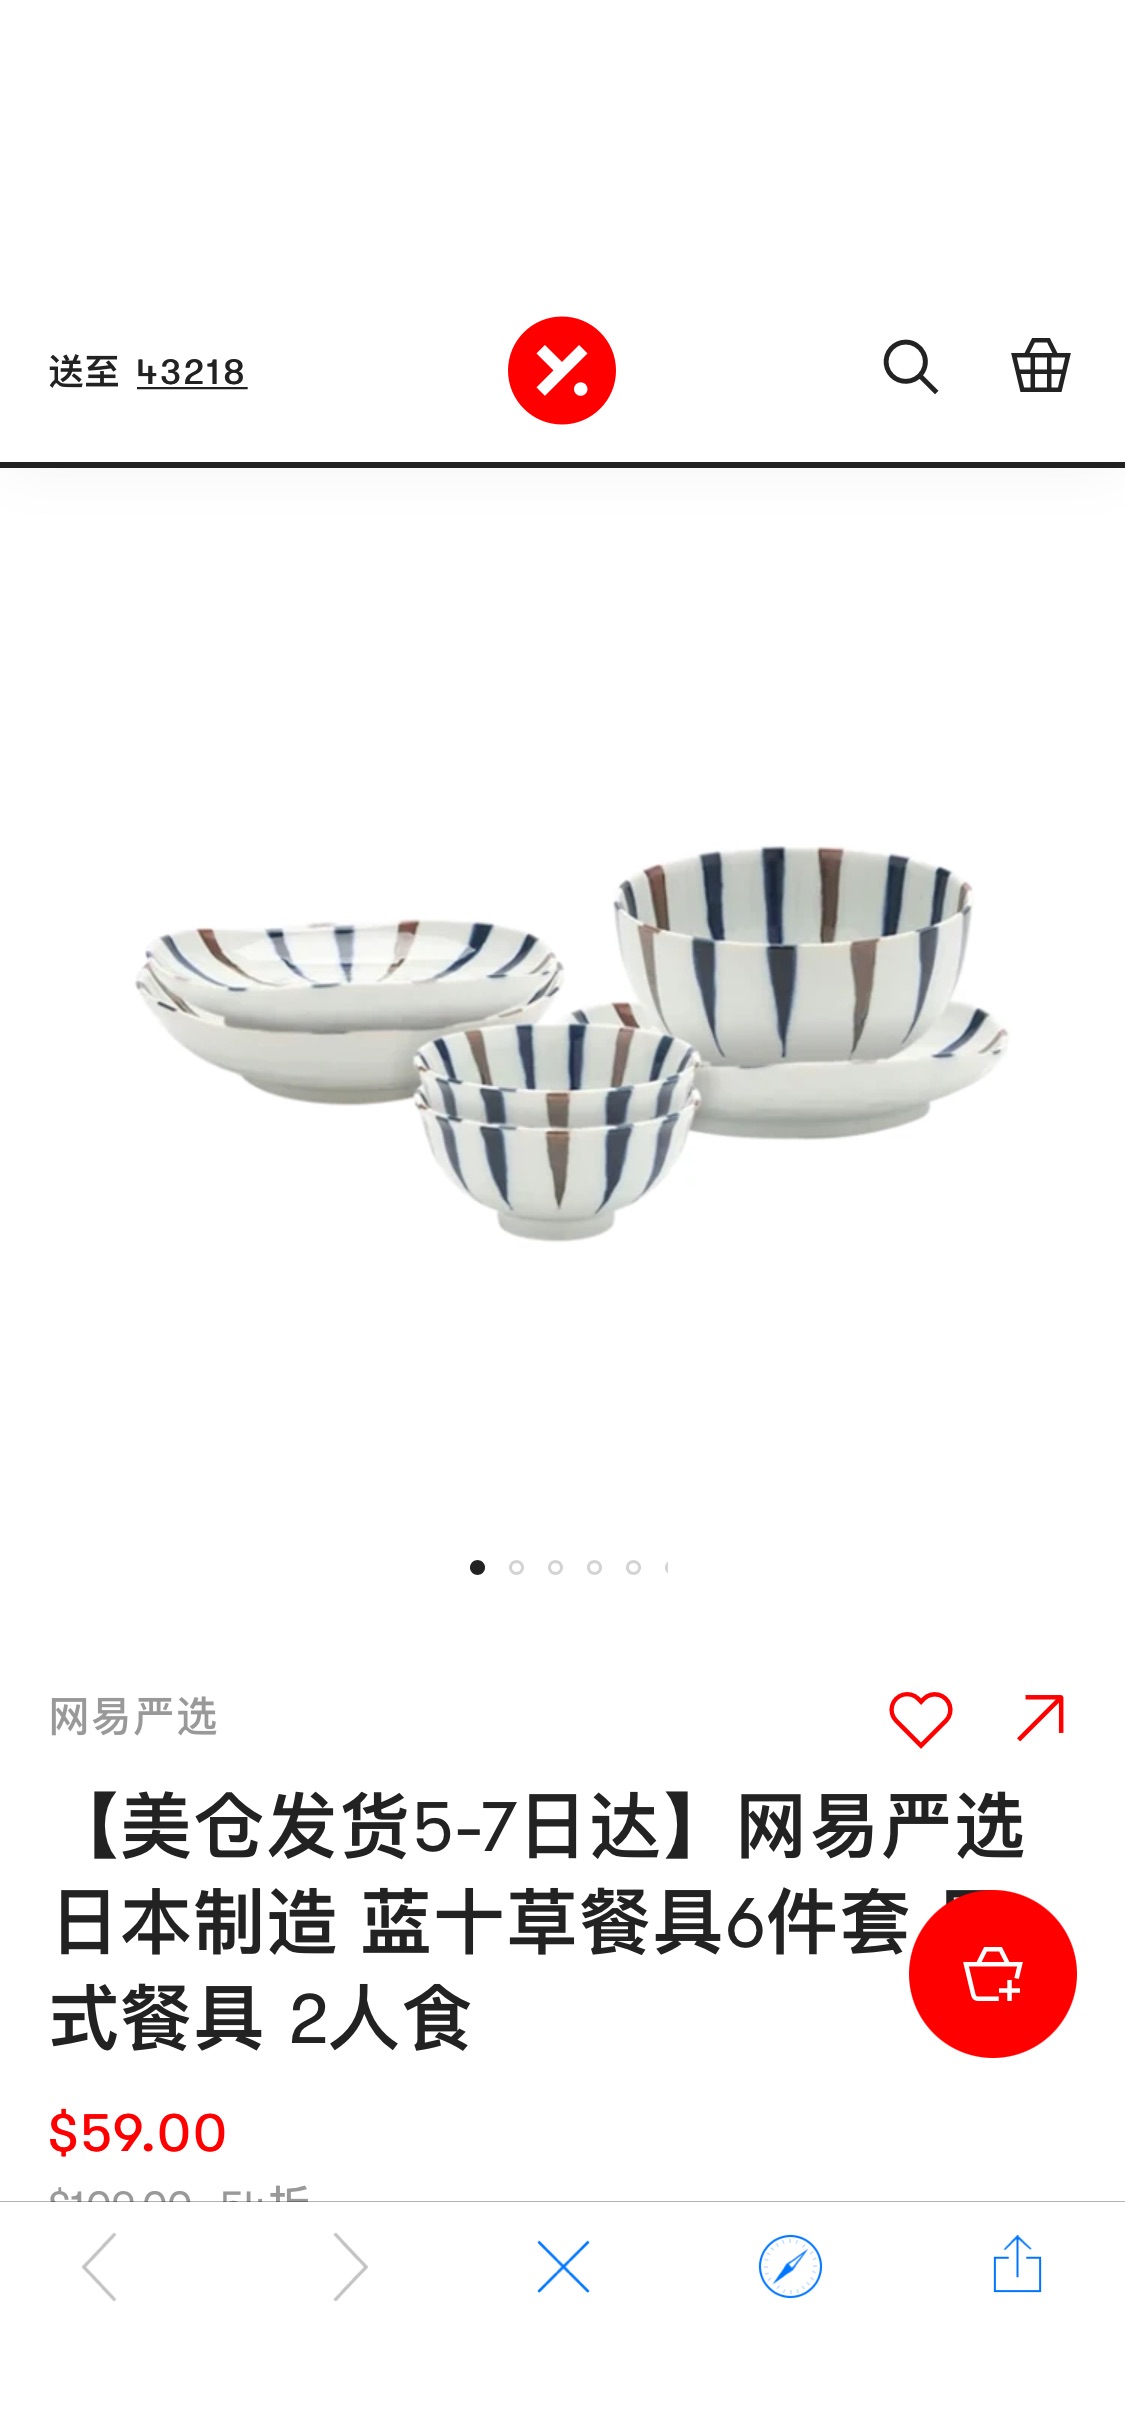 【美仓发货5-7日达】网易严选 日本制造 蓝十草餐具6件套 日式餐具 2人食 - 亚米